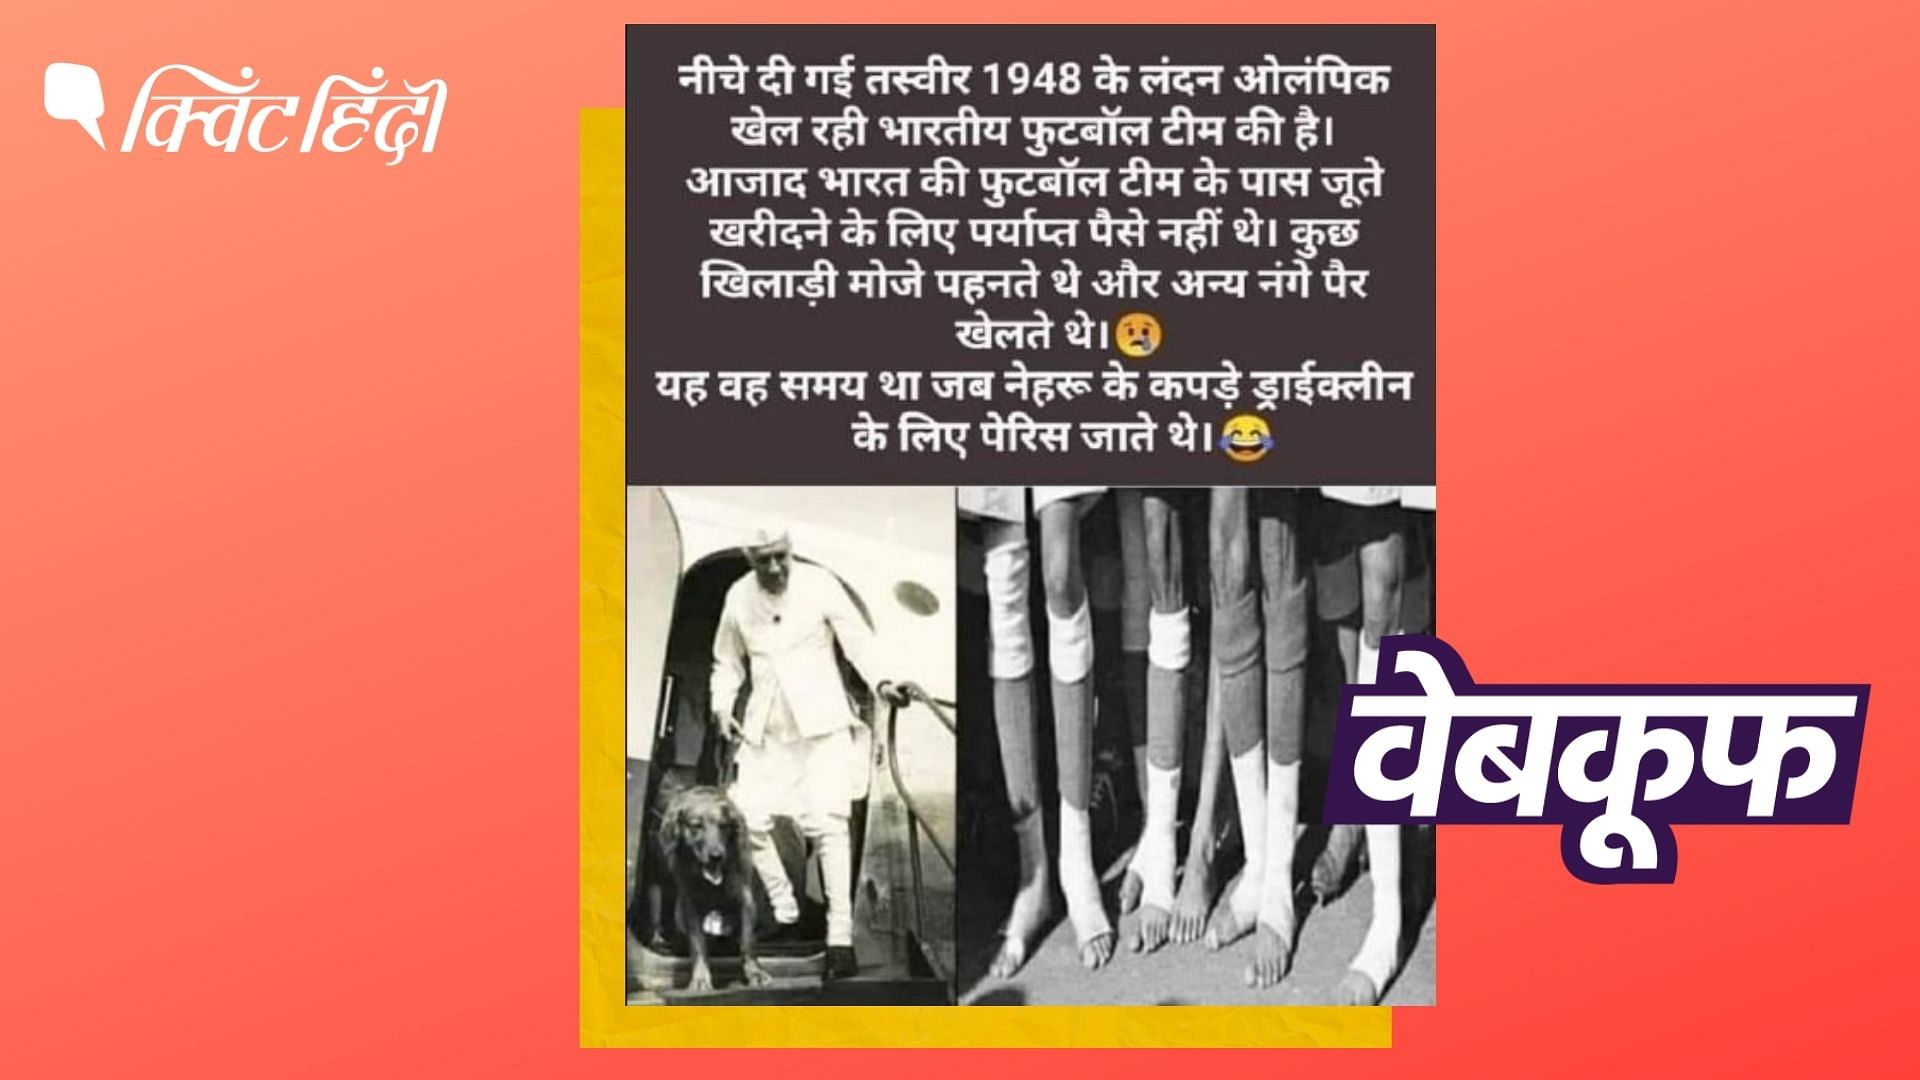 <div class="paragraphs"><p>1948 Olympics में कुछ भारतीय खिलाड़ी नंगे पैर अपनी मर्जी से खेले थे</p></div>